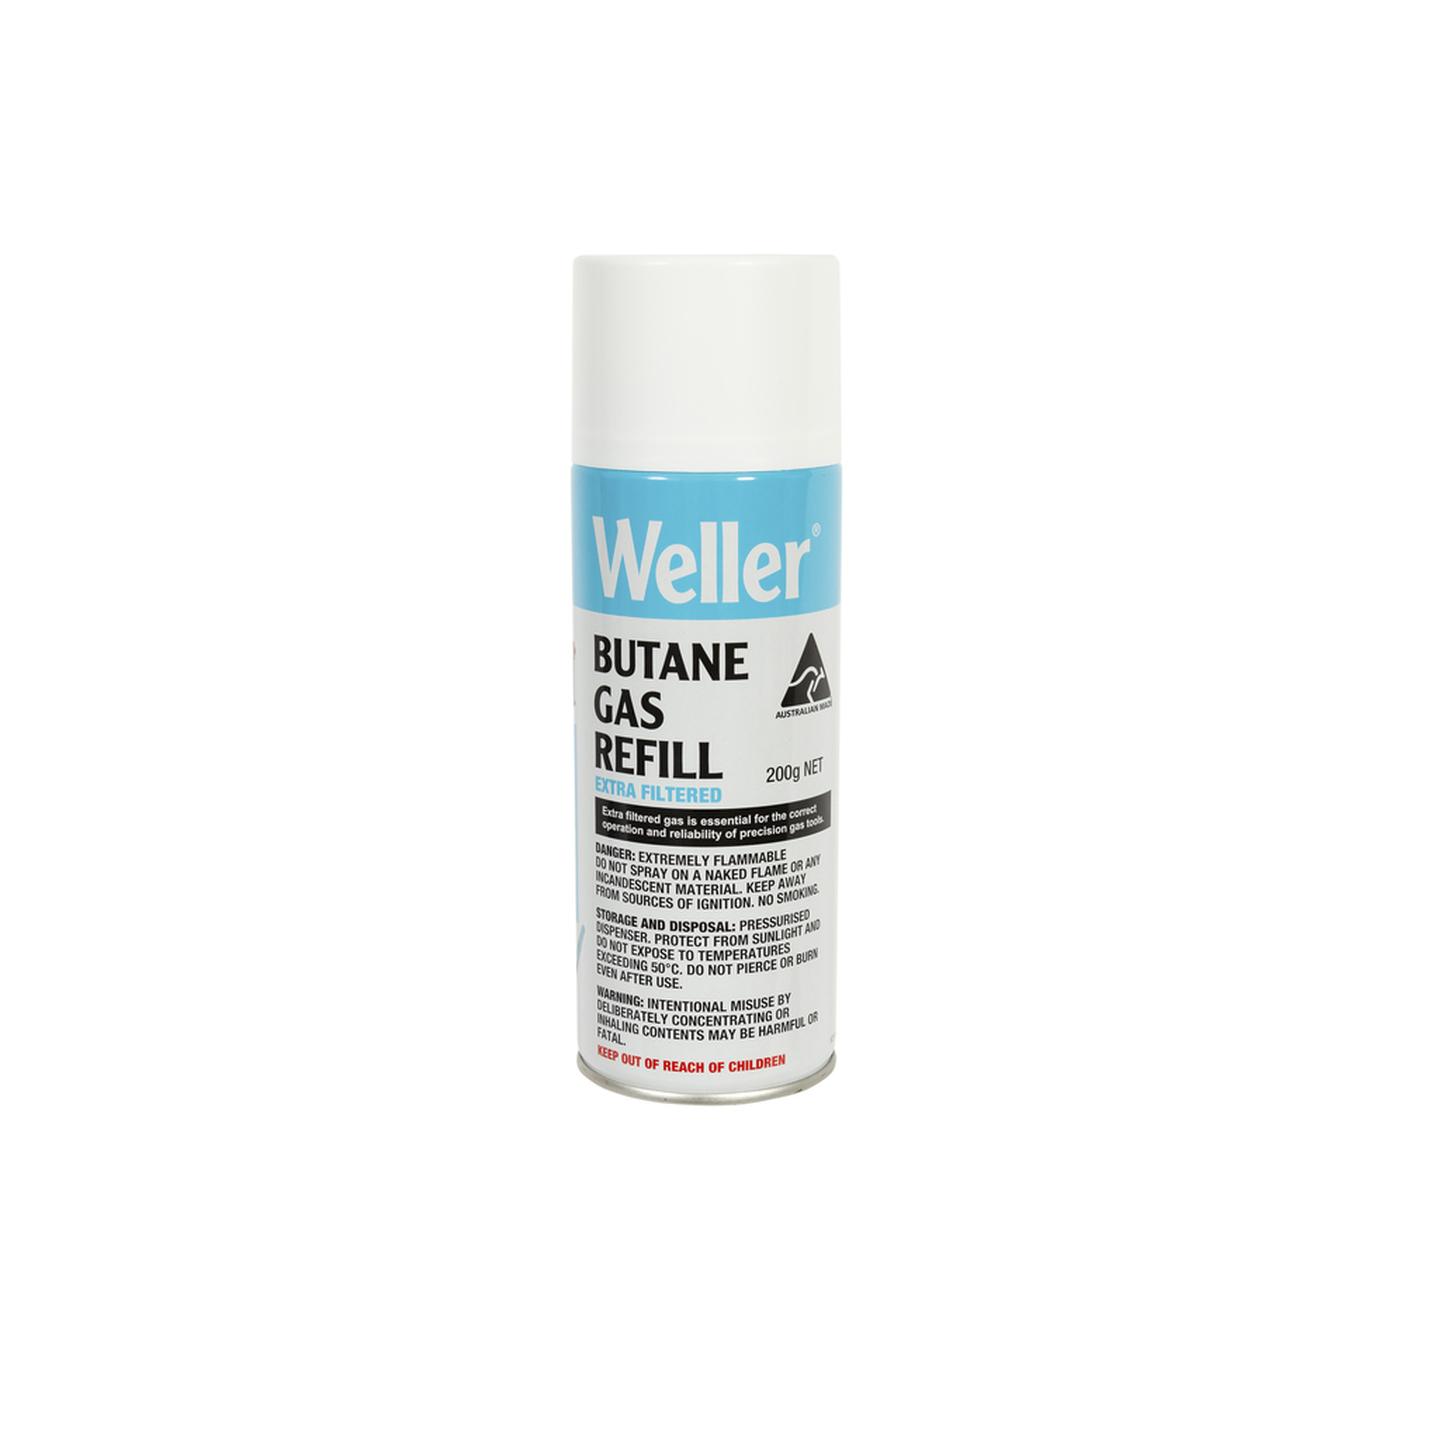 Weller Butane Gas Refill - 200g - Extra Filtered - Australian Made